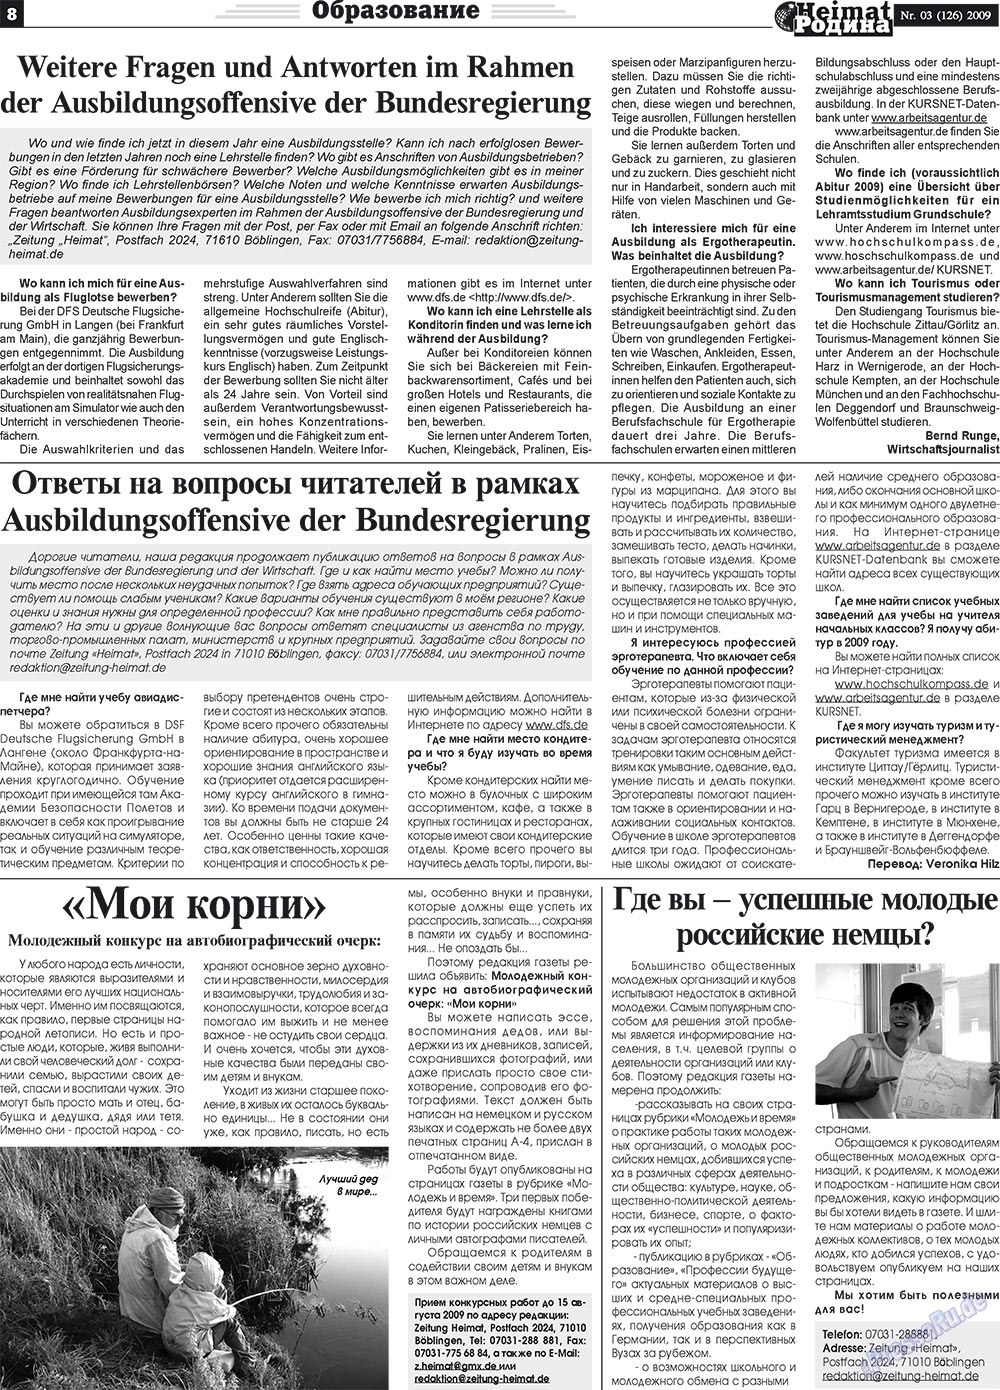 Heimat-Родина (газета). 2009 год, номер 3, стр. 8